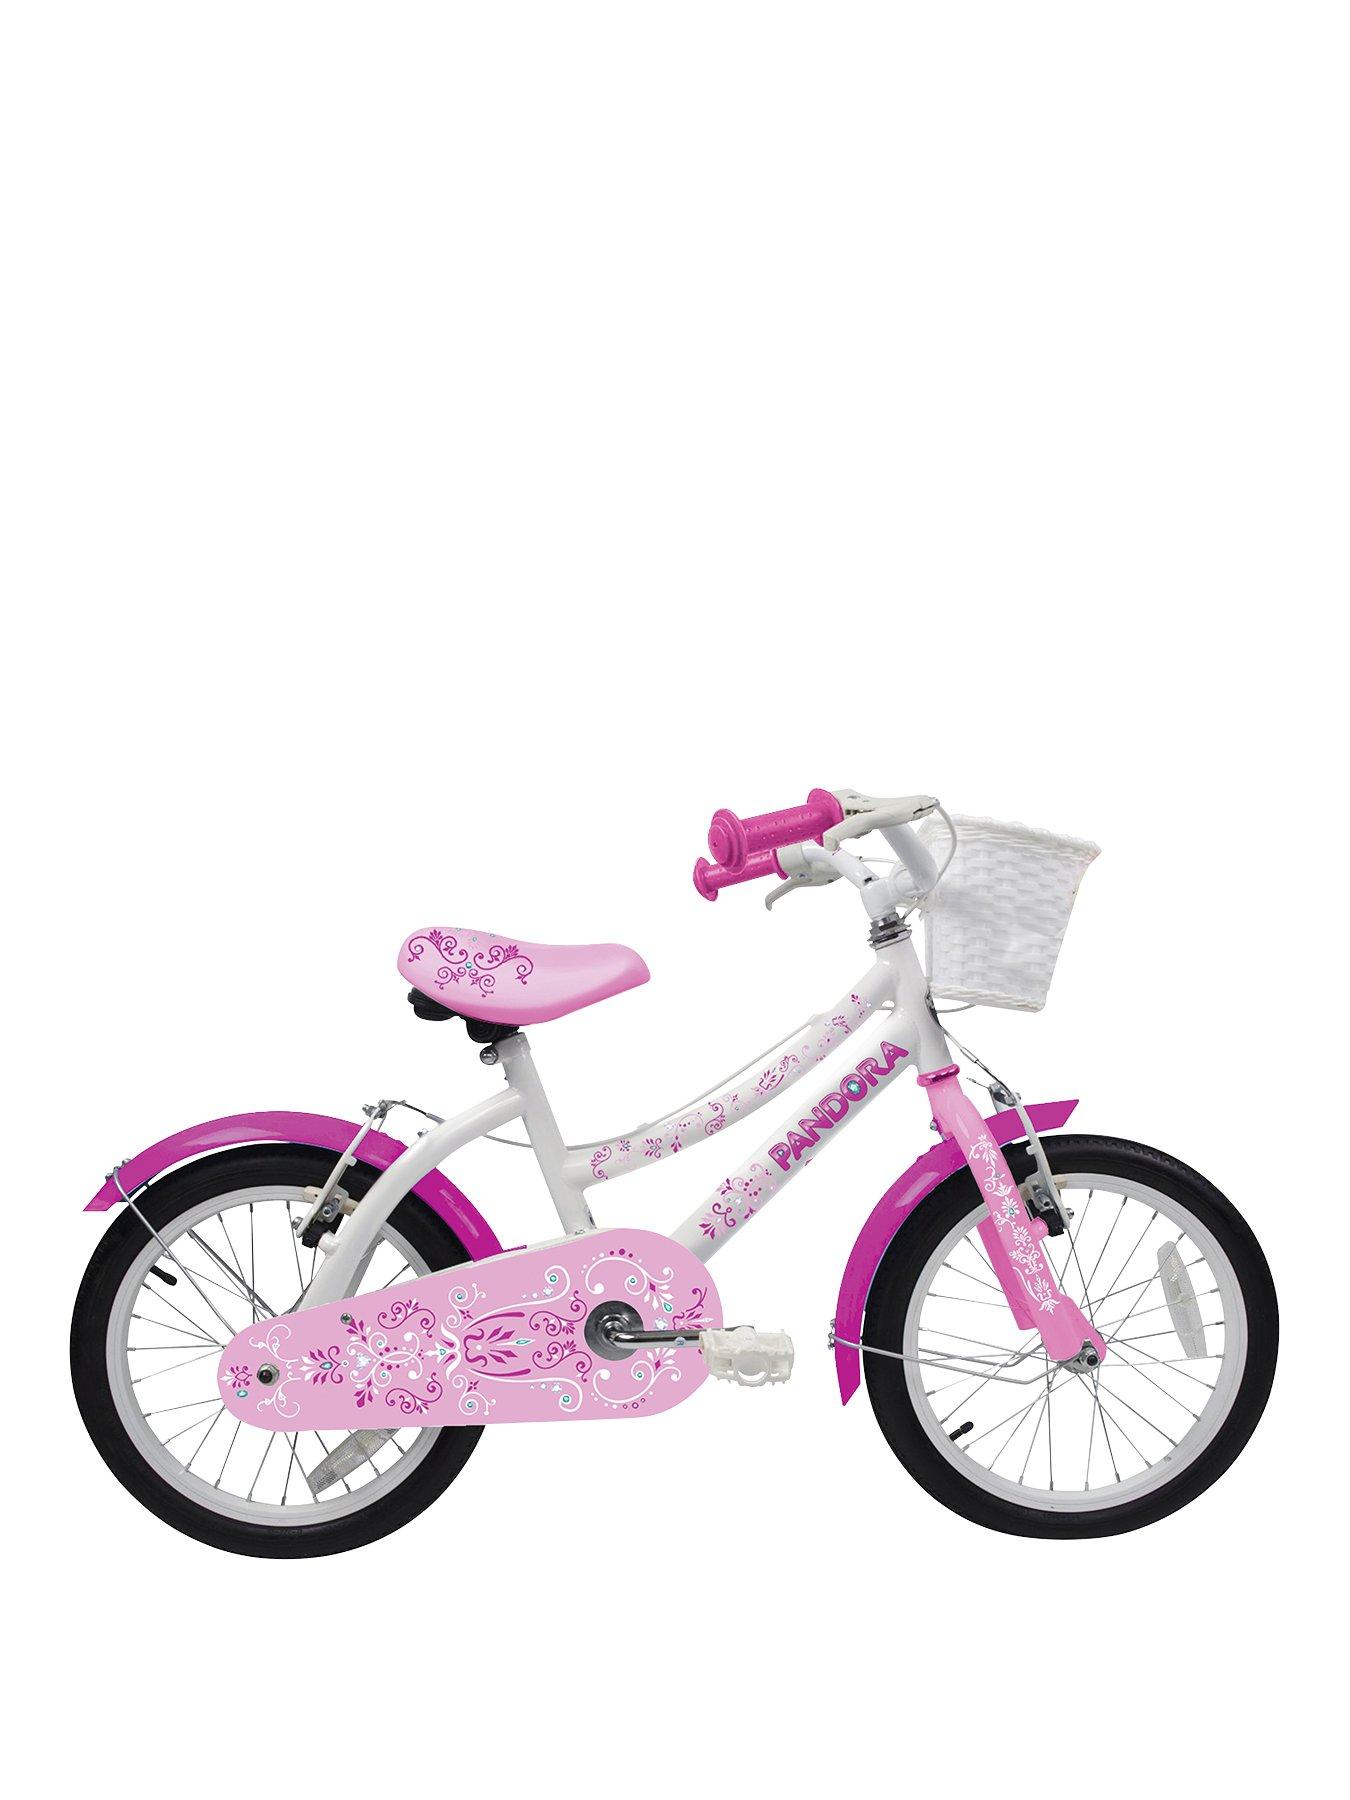 girls bike very